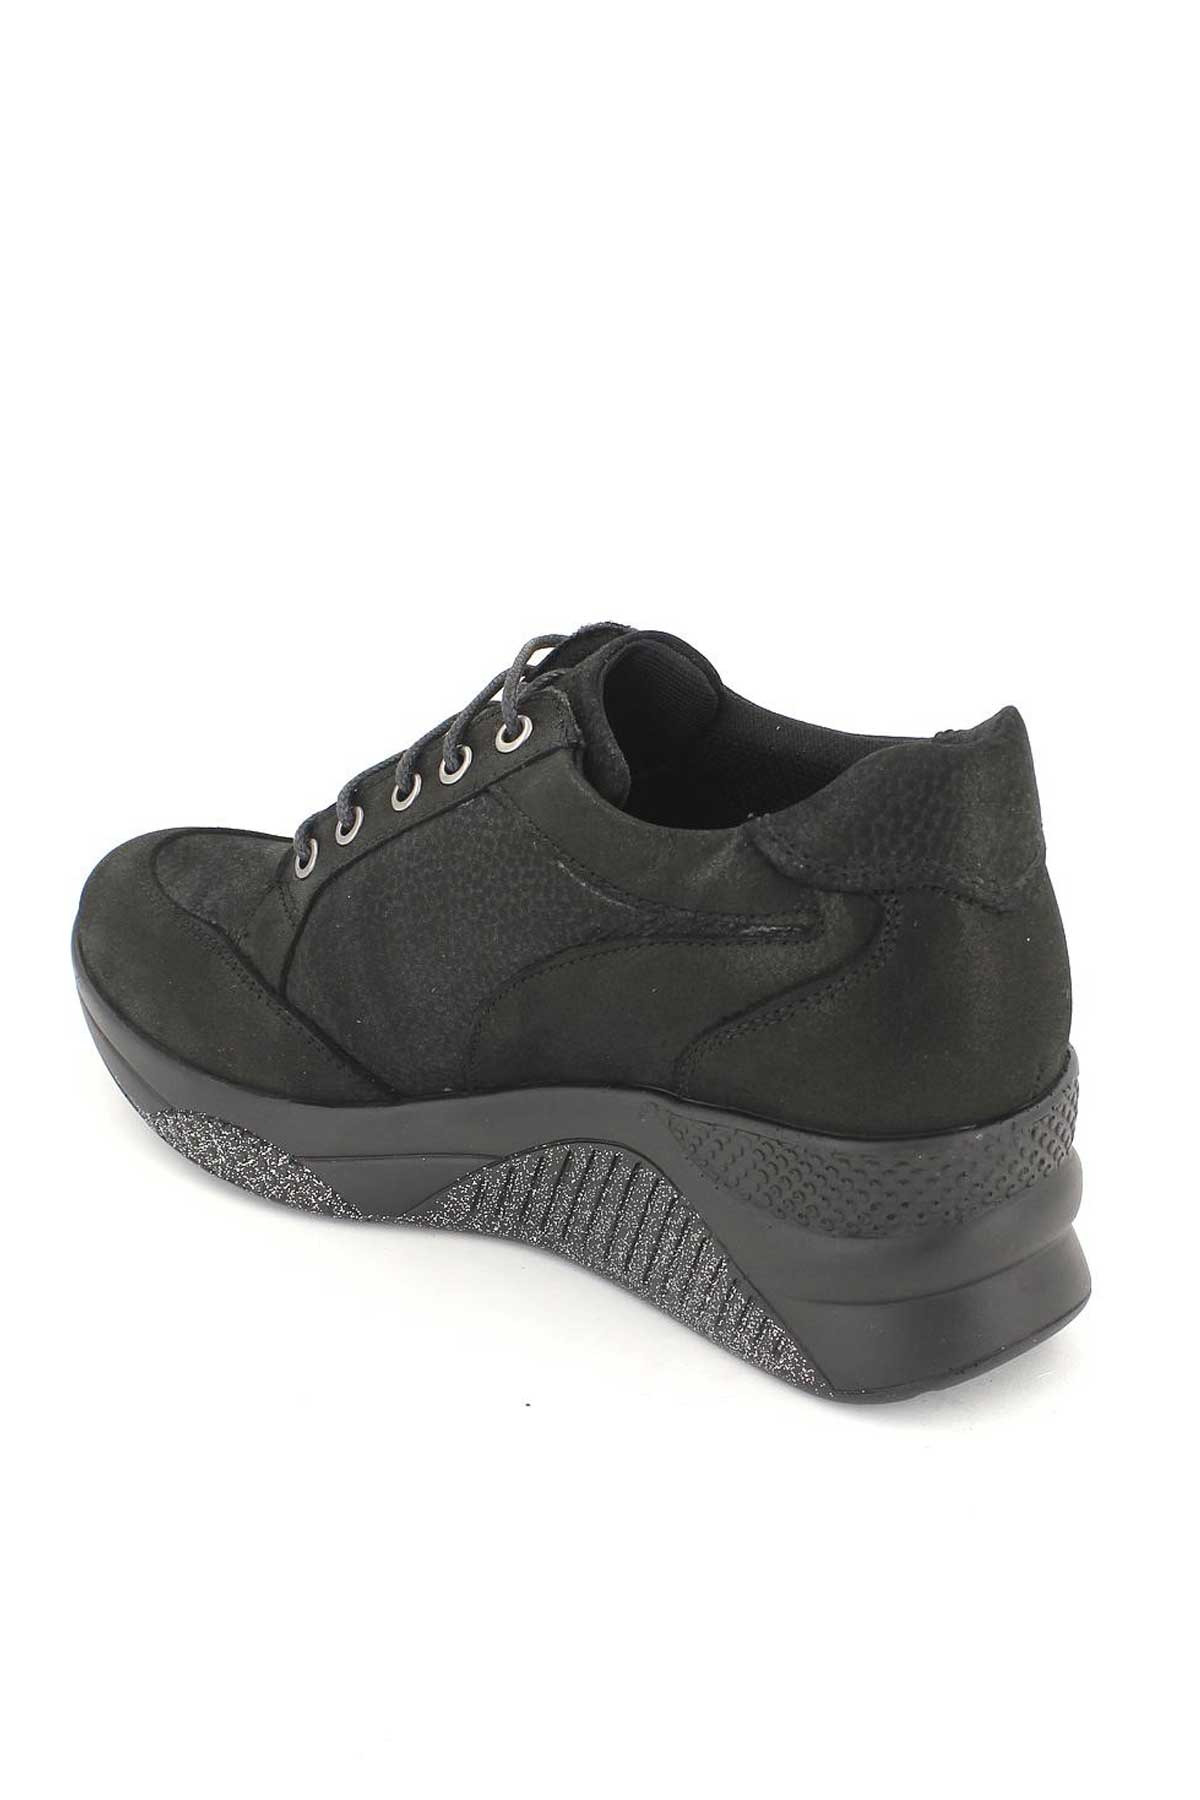 Kadın Deri Sneakers Siyah 1856005K - Thumbnail